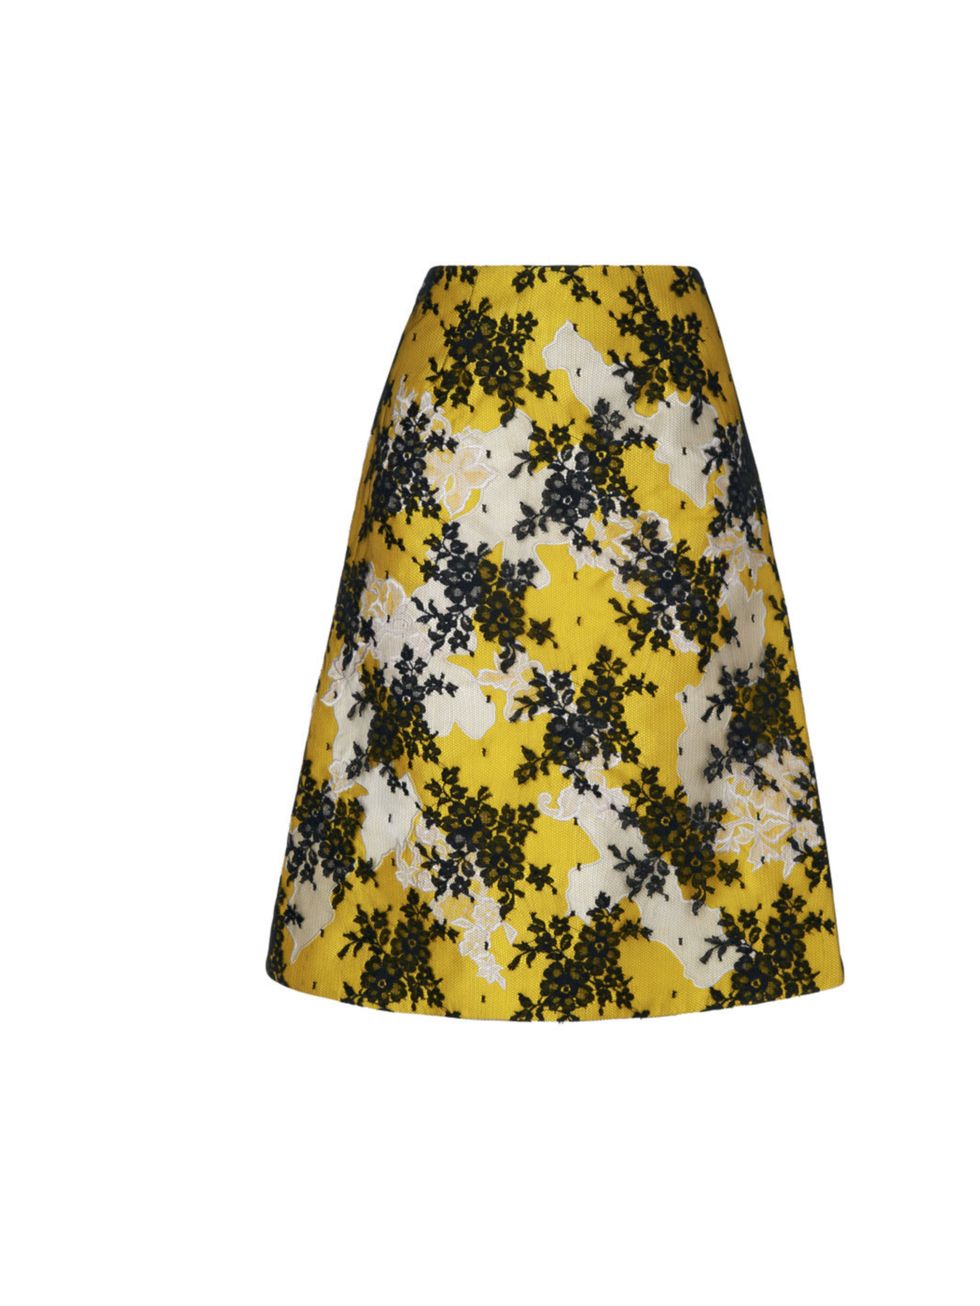 <p>Erdem skirt, was £1,650 now £825, at <a href="http://www.selfridges.com/">Selfridges</a></p>